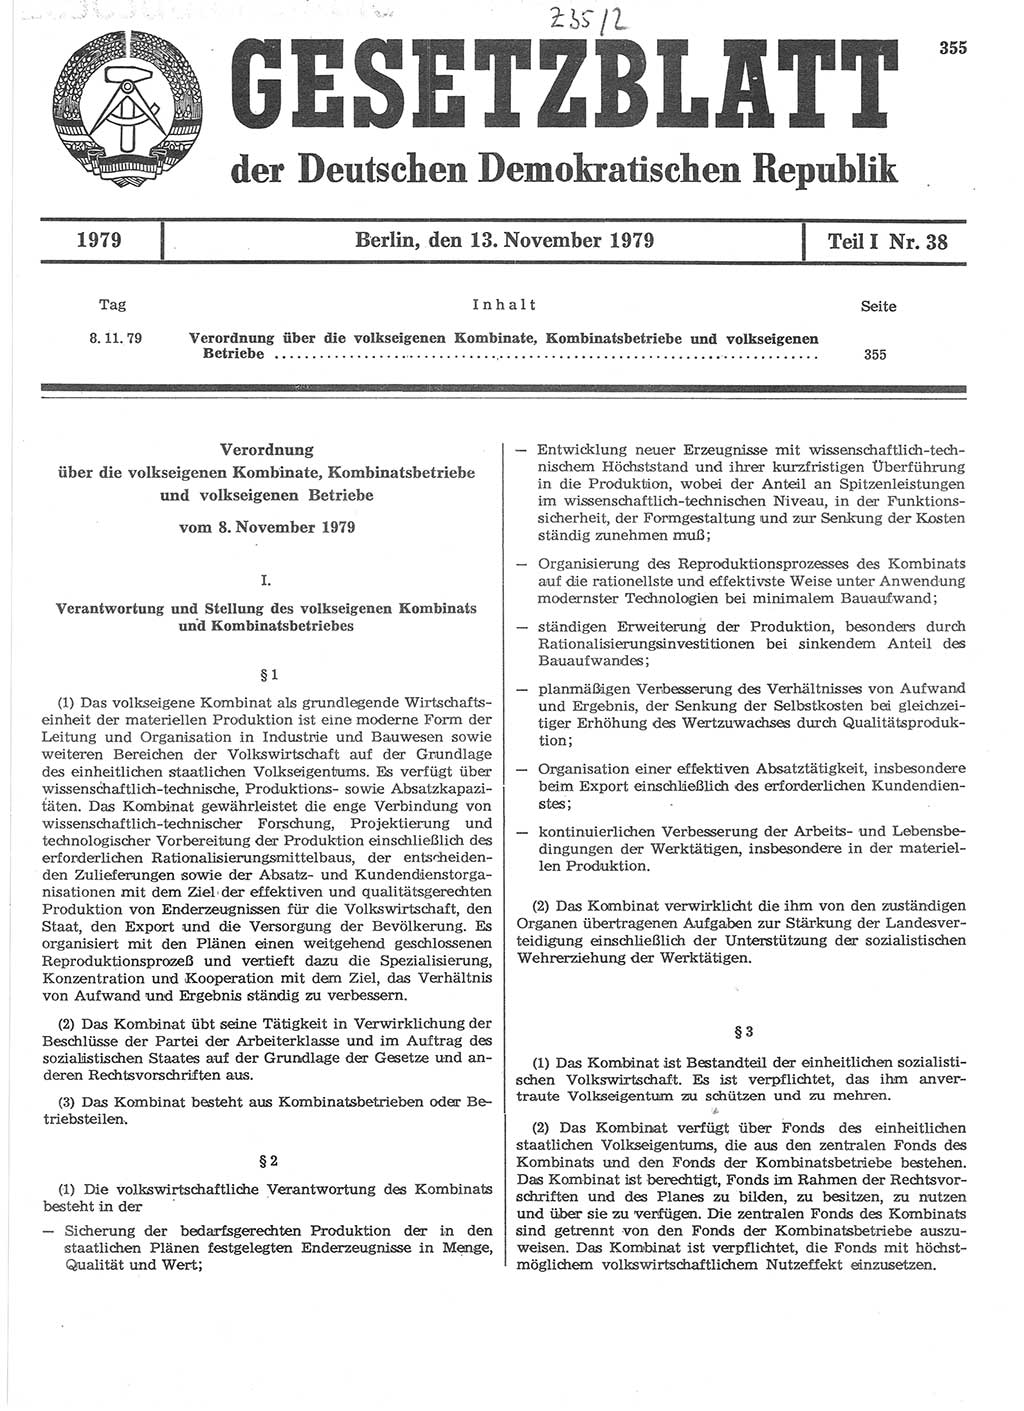 Gesetzblatt (GBl.) der Deutschen Demokratischen Republik (DDR) Teil Ⅰ 1979, Seite 355 (GBl. DDR Ⅰ 1979, S. 355)